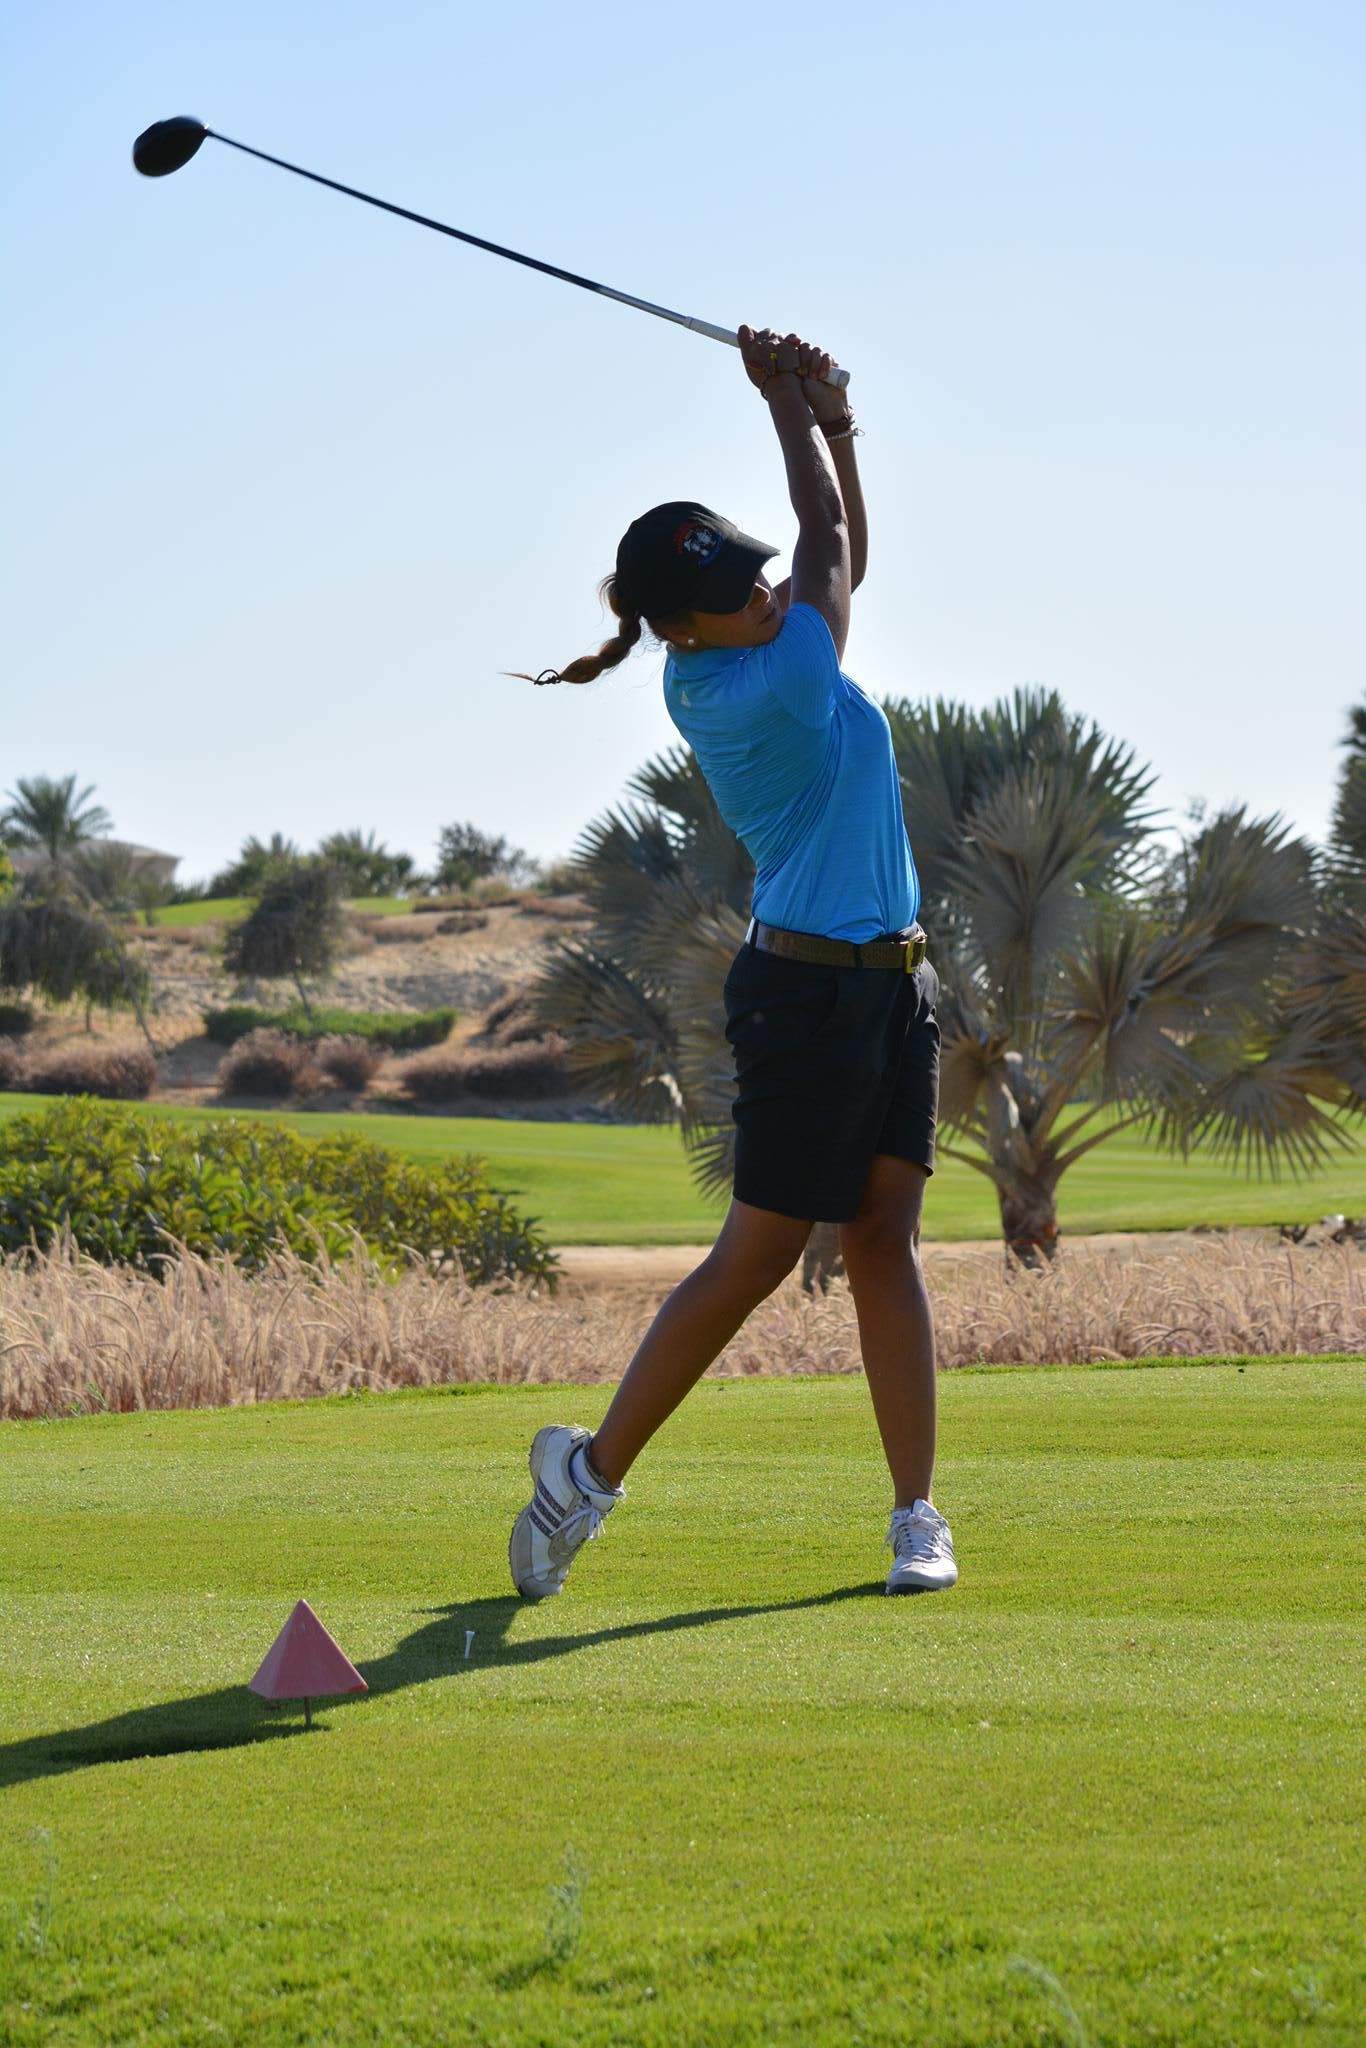 3 نصائح لتحسين أدائك في رياضة الغولف من نائلة العطار أول محترفة غولف مصرية